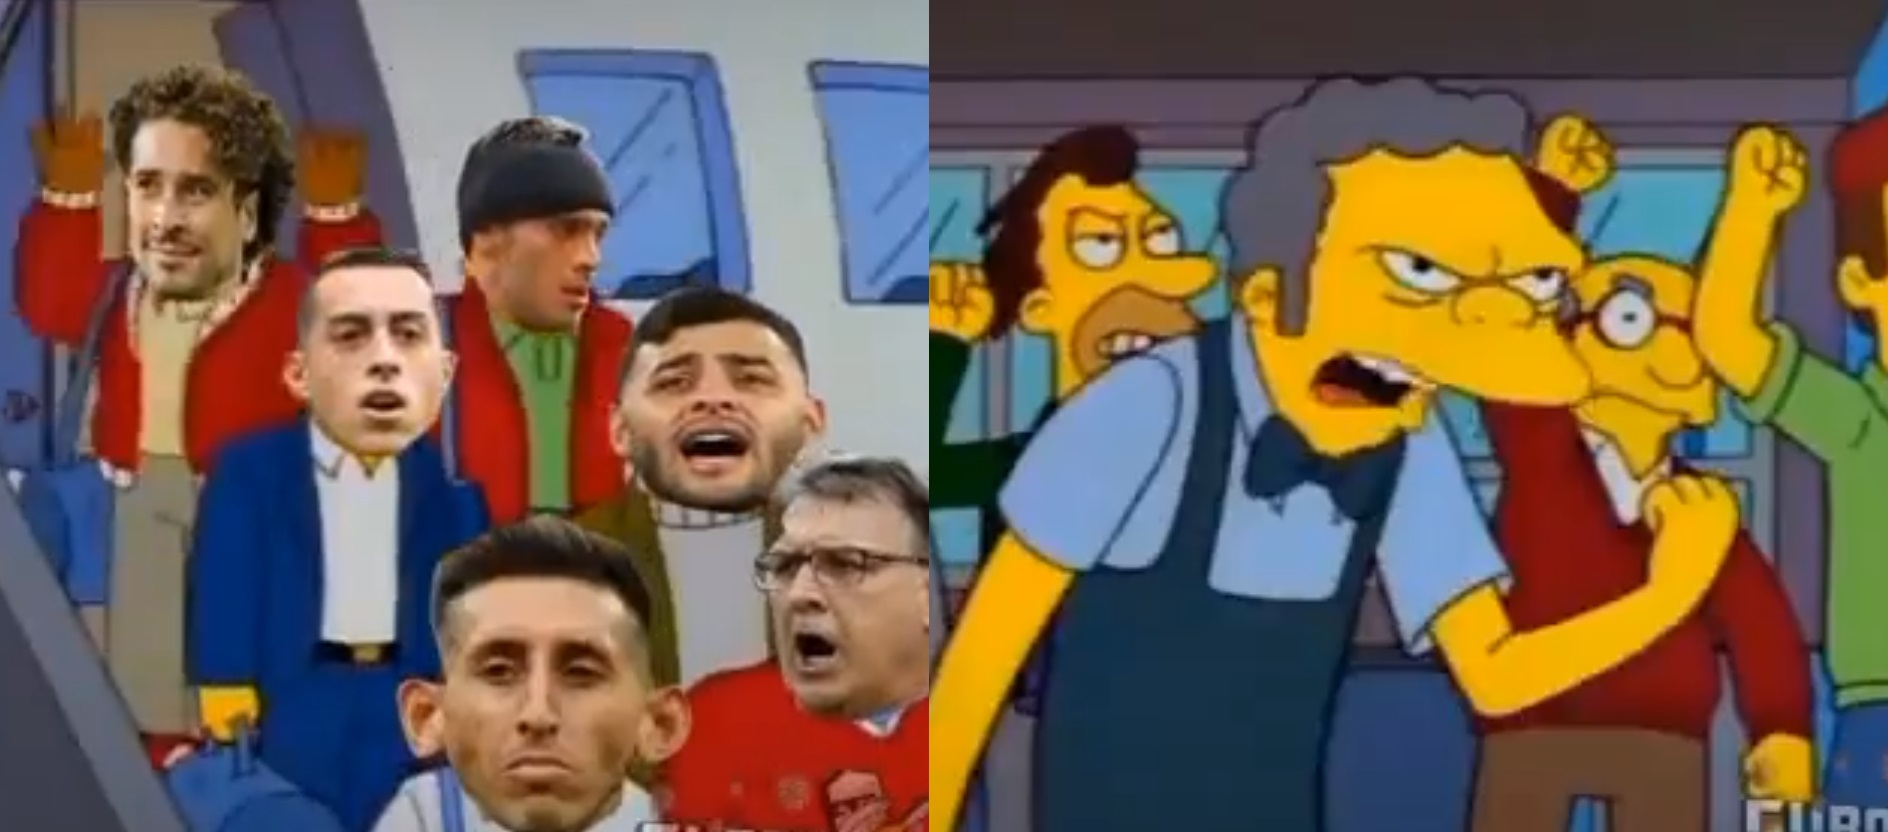 Predicen llegada de la Selección a México con meme de Los Simpson